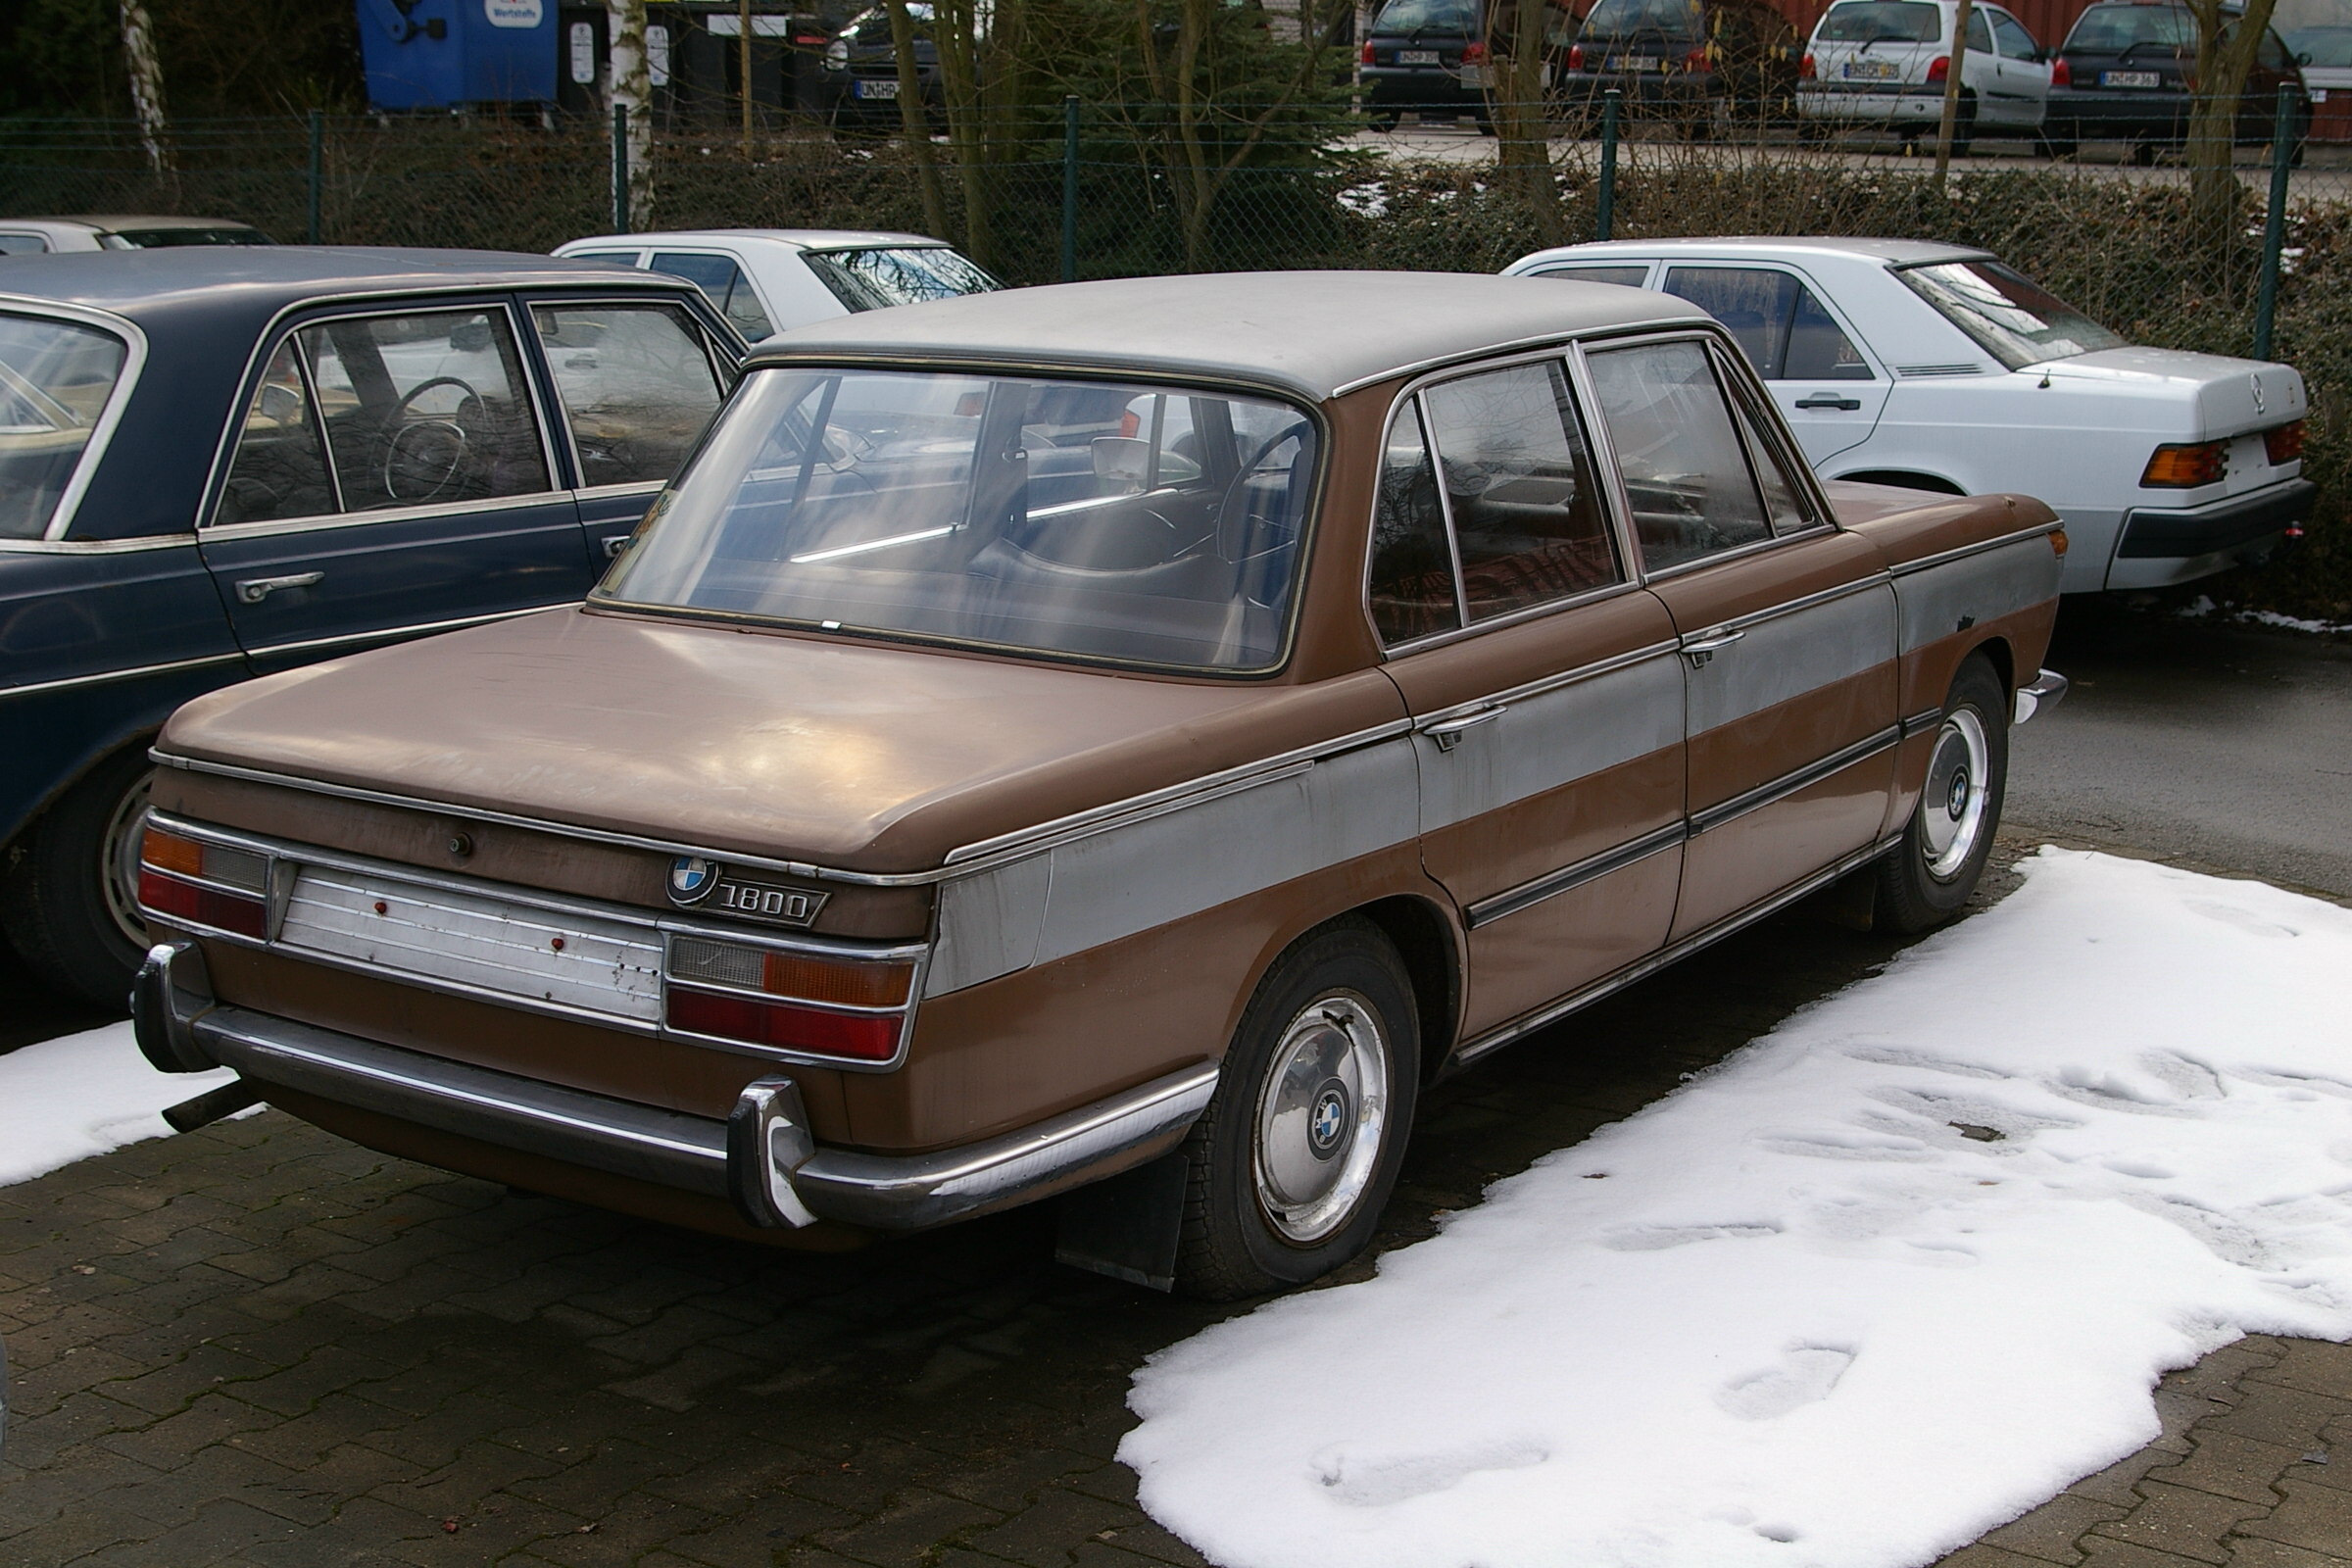 Dossier : BMW-1800.jpg - Wikimedia Commons